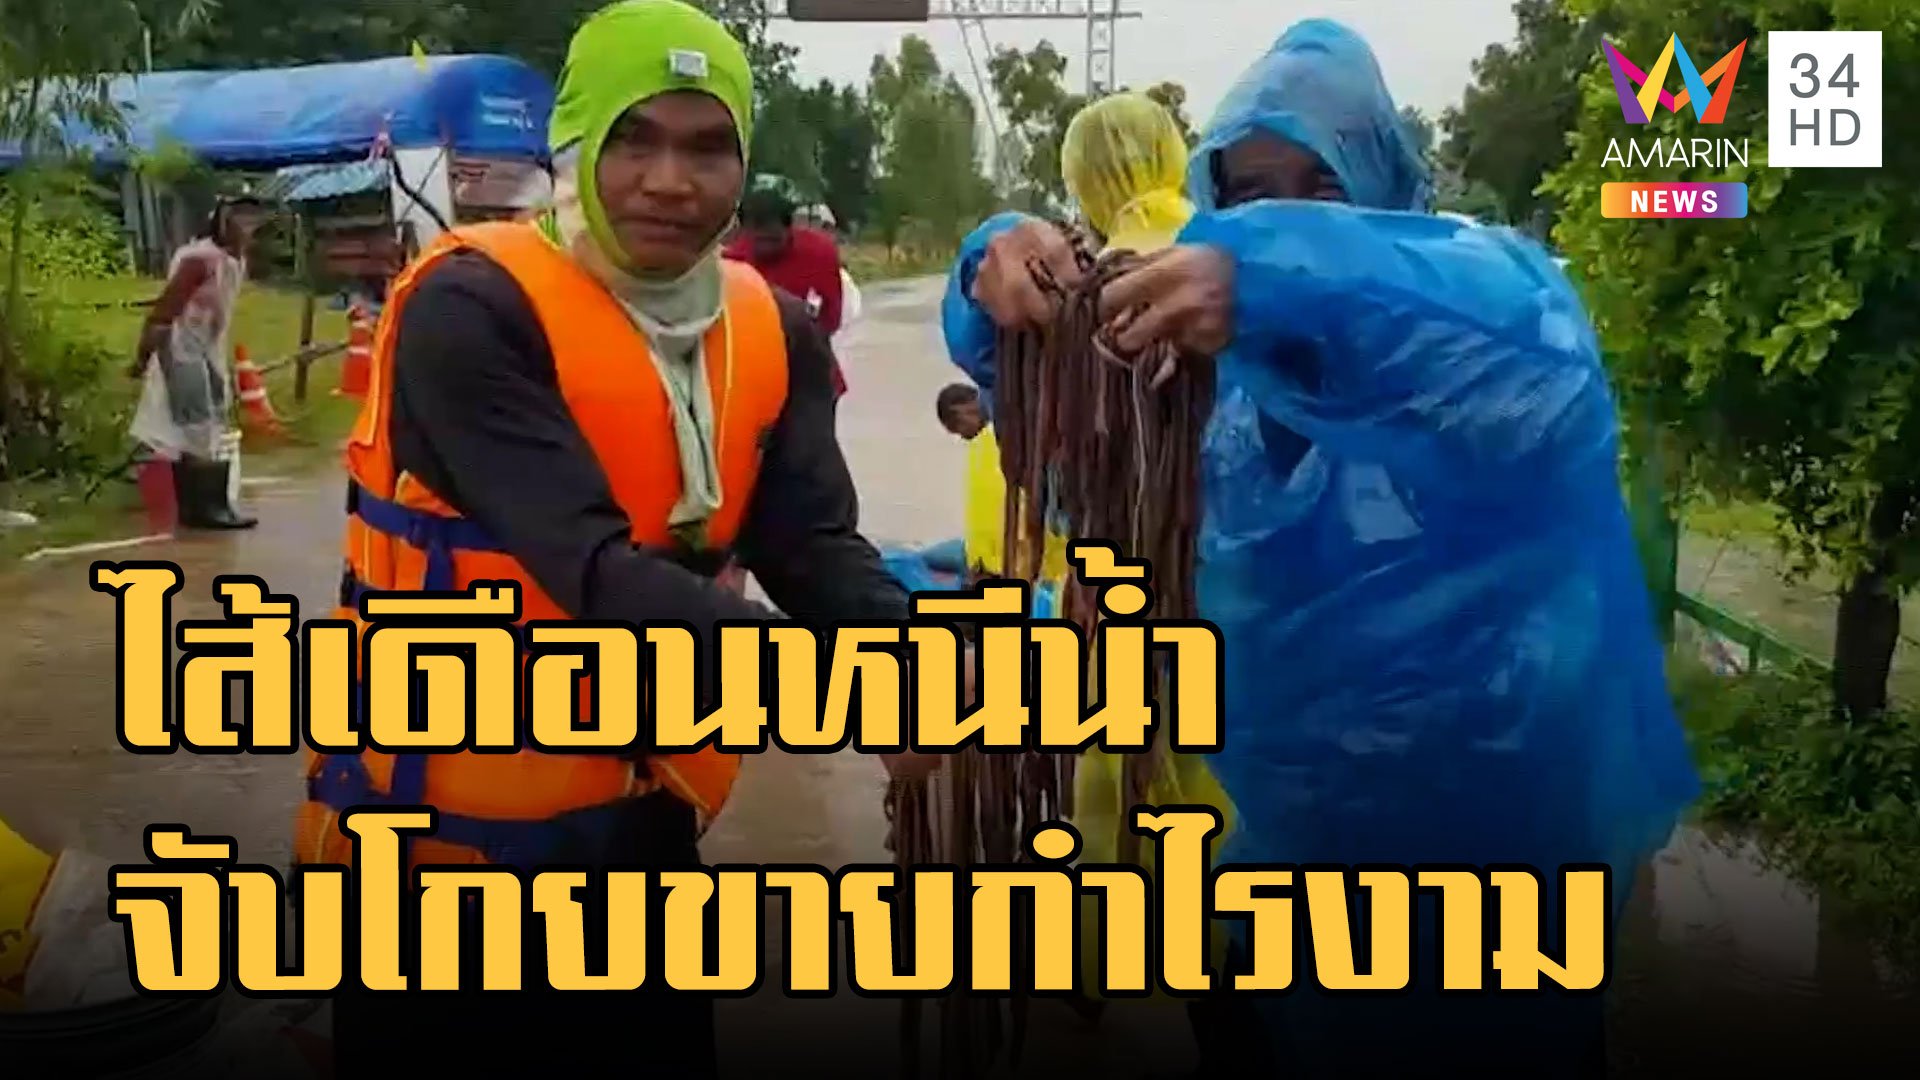 พายุโนรูพัดถล่มไทยไส้เดือนอพยพหนีน้ำ ชาวบ้านลงแรงโกยกิโลละ 20 บาท | ข่าวอรุณอมรินทร์ | 29 ก.ย. 65 | AMARIN TVHD34